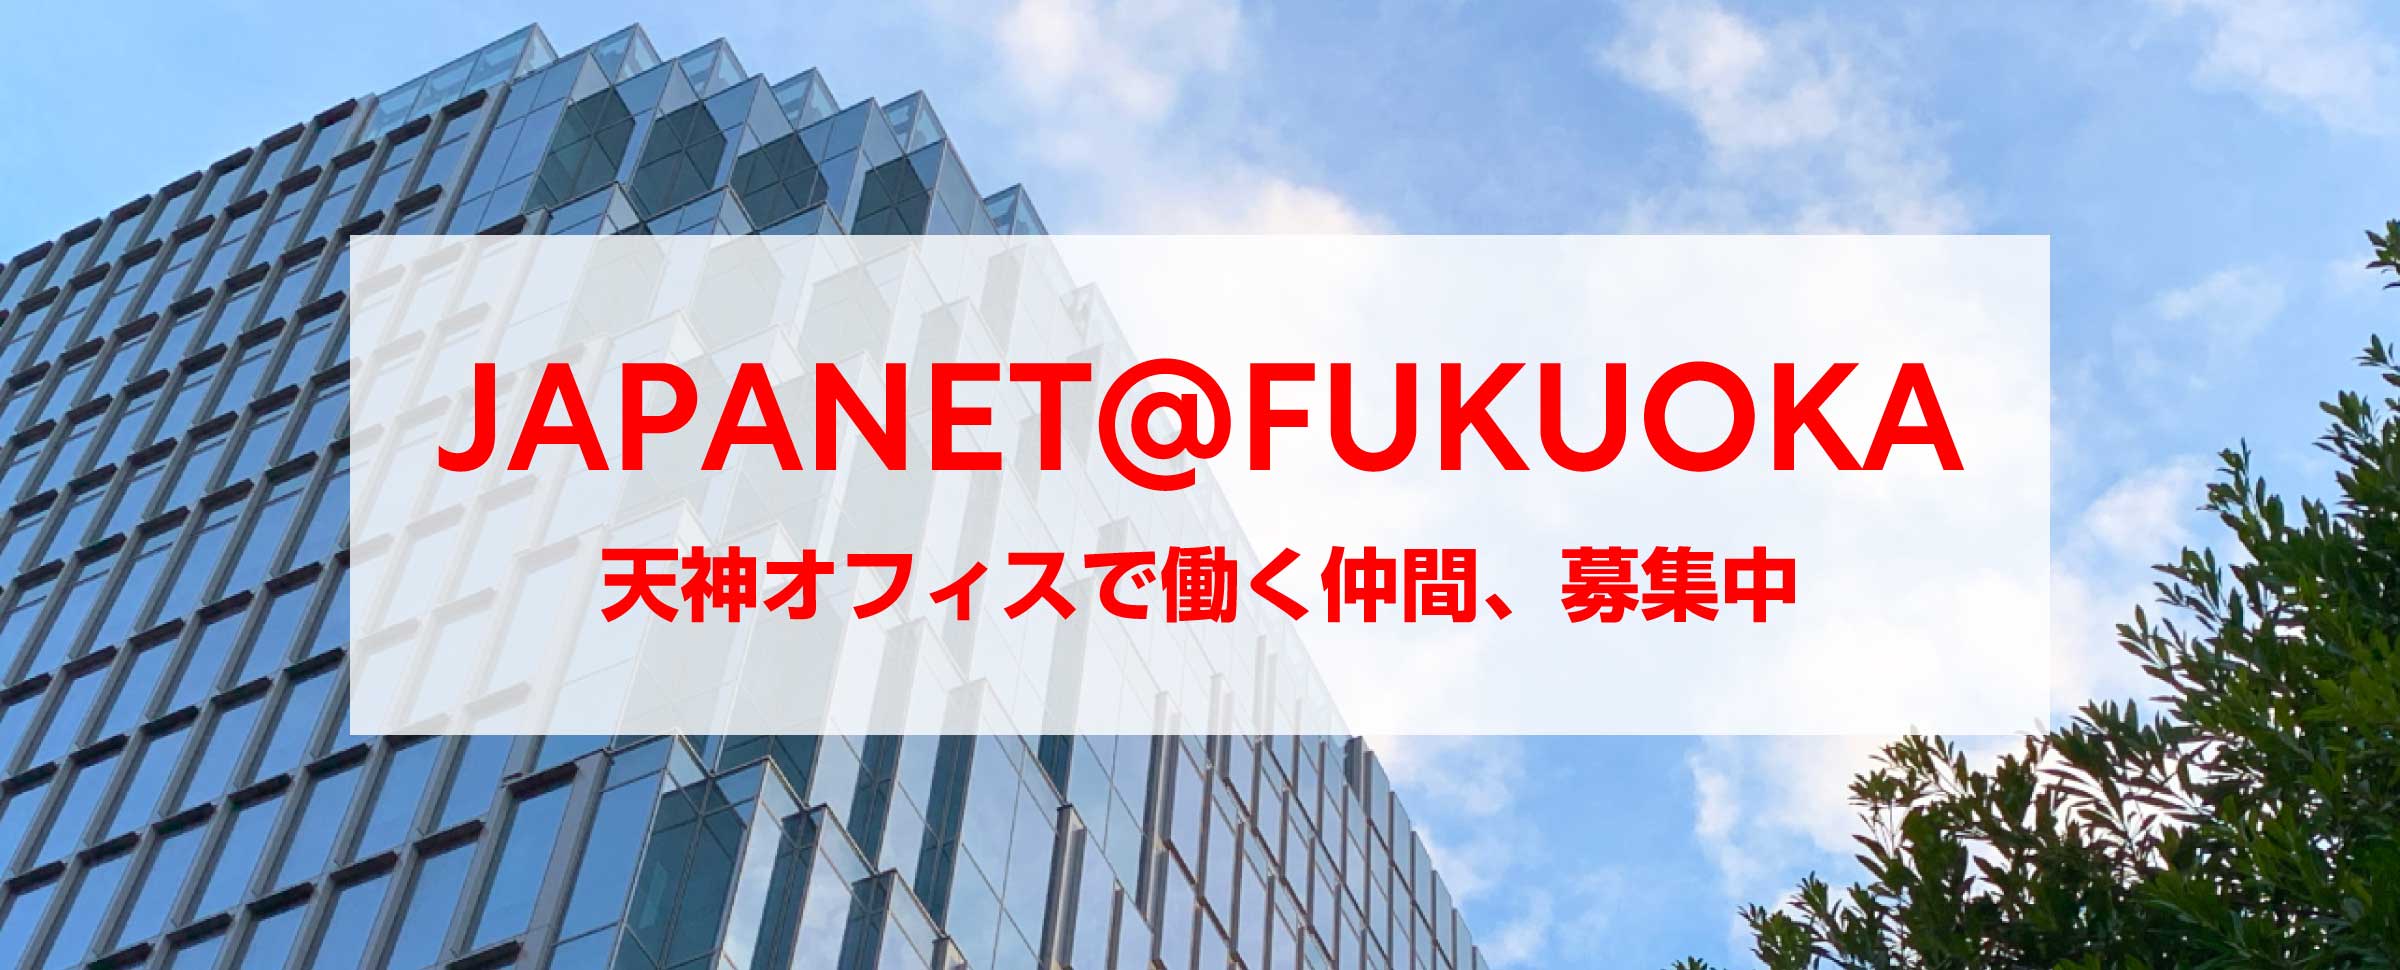 JAPANET@FUKUOKA 第２弾大規模採用スタート